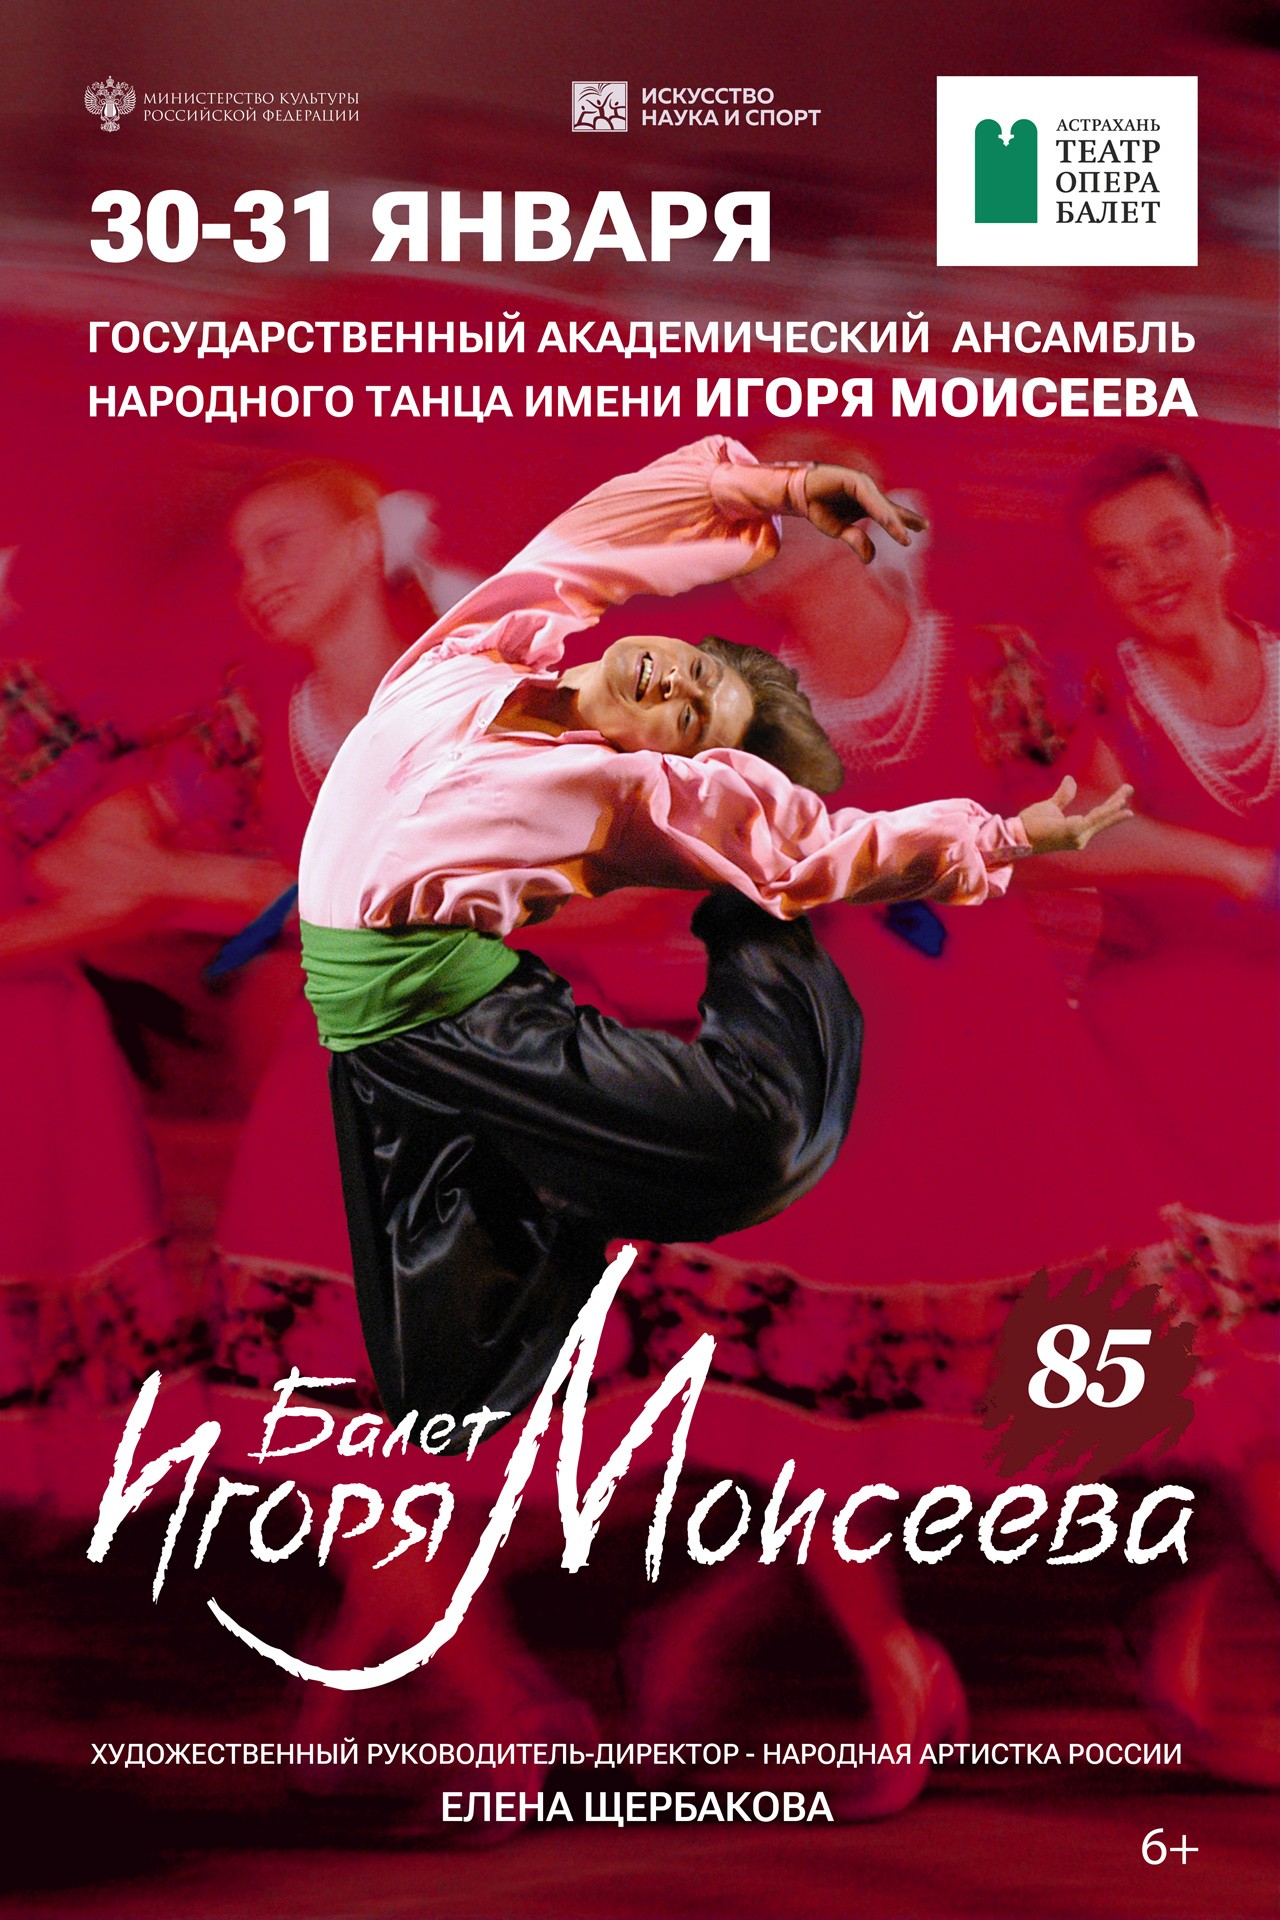 Балет Игоря Моисеева приедет на гастроли в Астрахань 30 и 31 января  со специальной программой к 85-летию коллектива